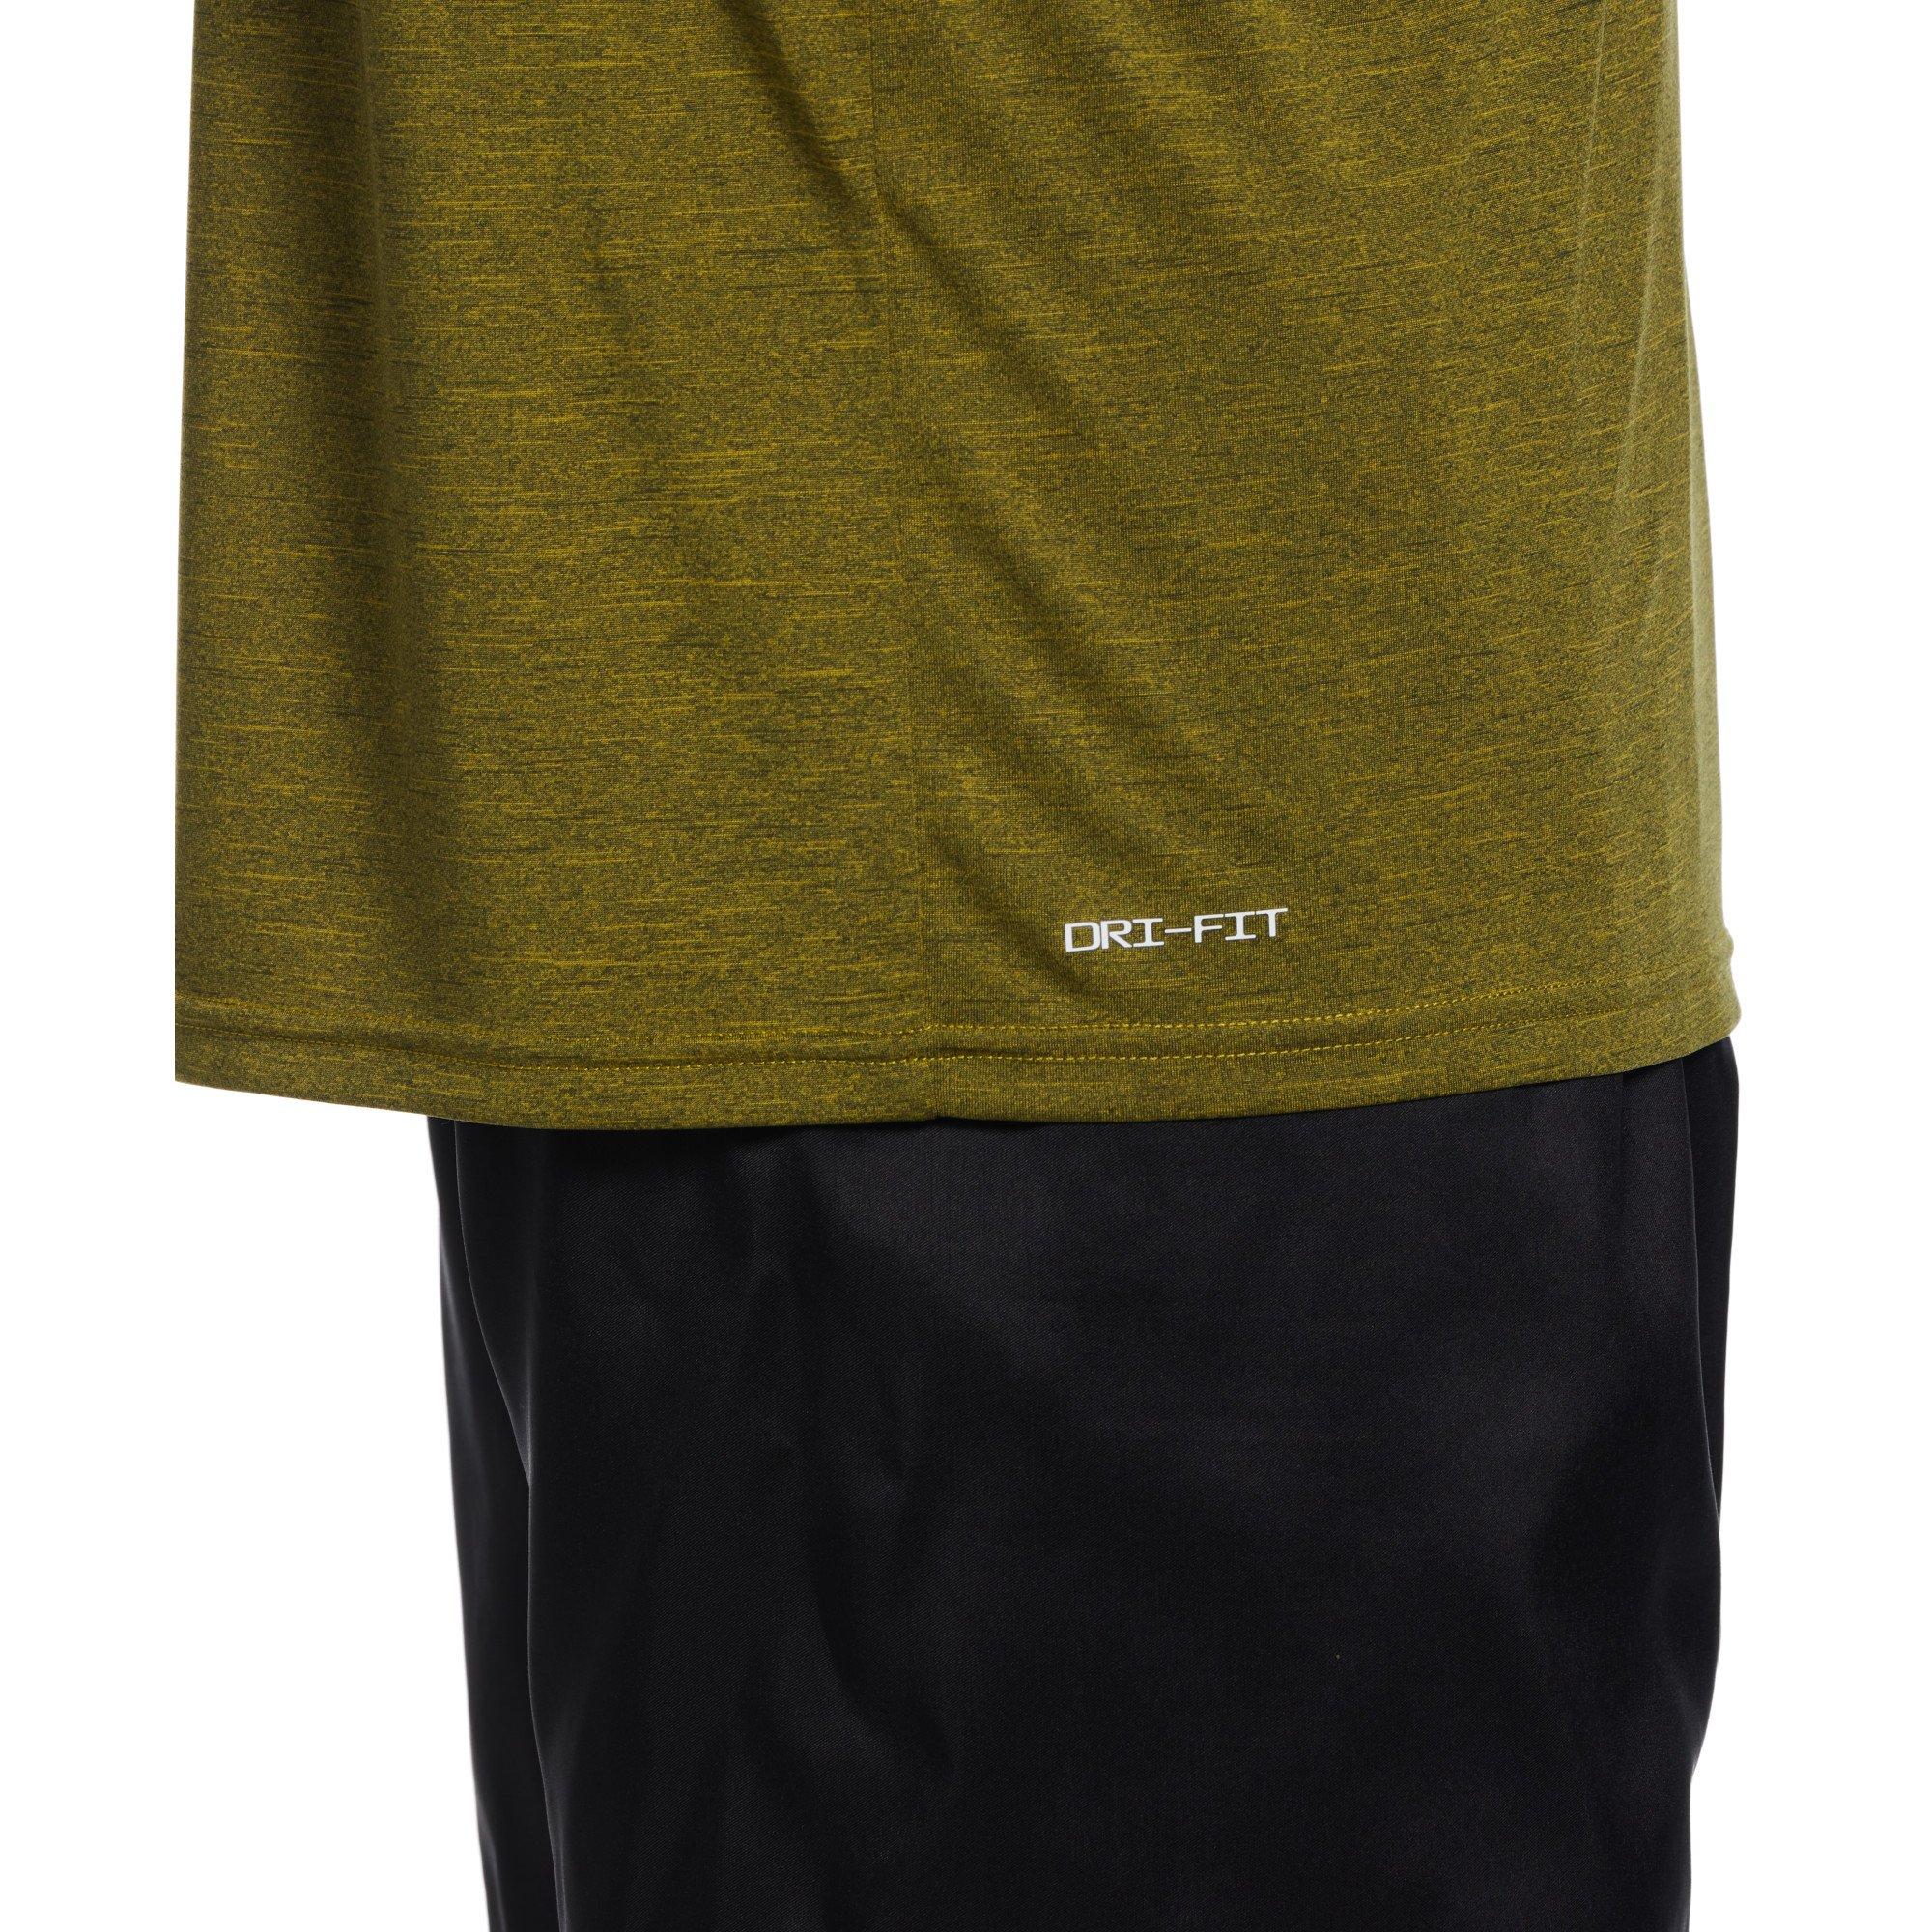 Men's Nike ESSA617 Dri-Fit Mashup Short Sleeve Rashguard (Game